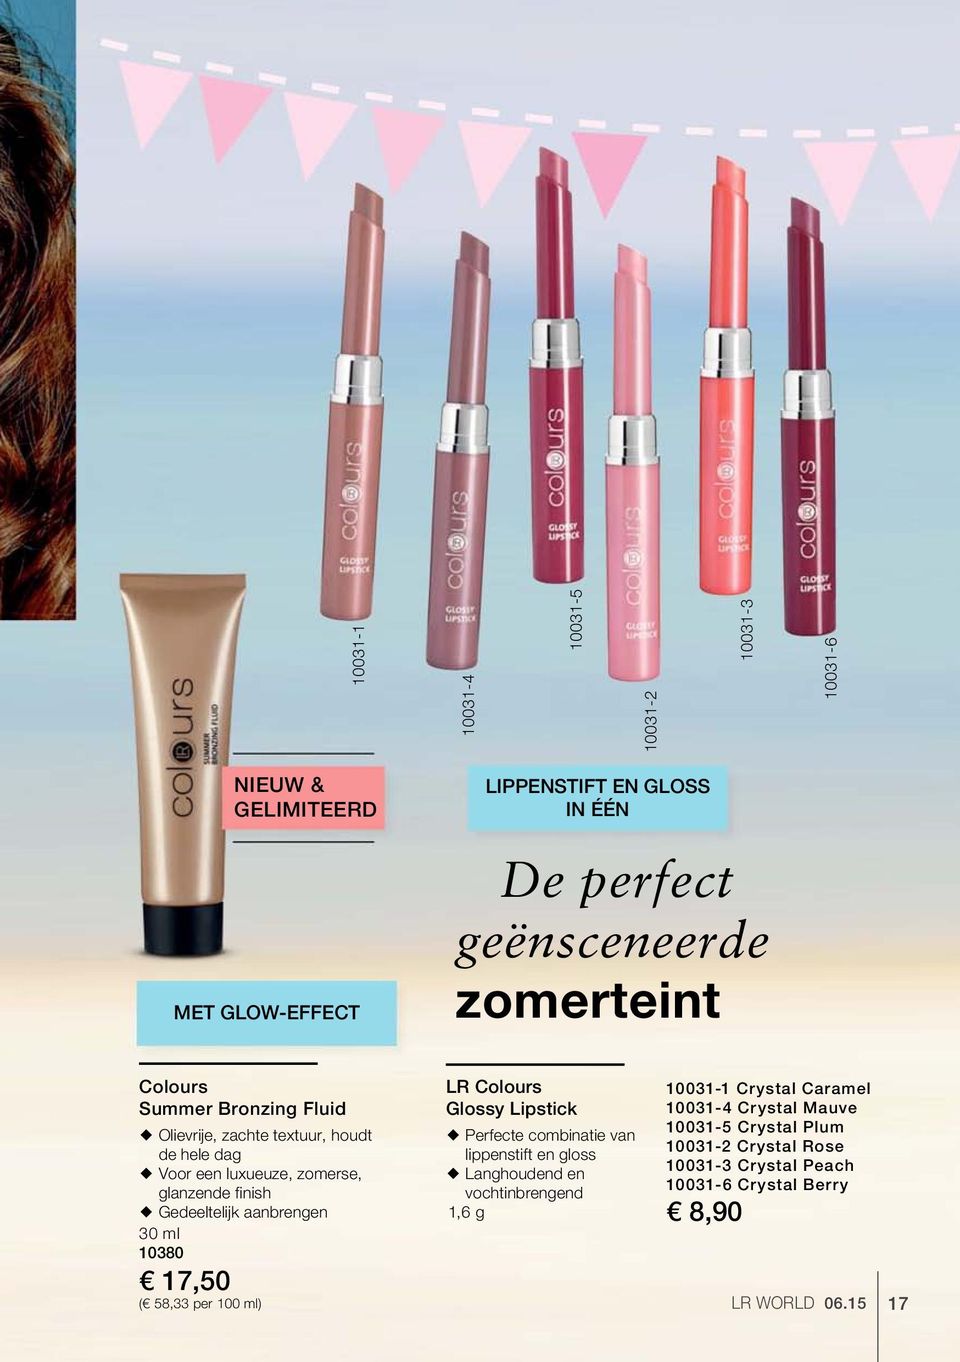 ml 10380 17,50 ( 58,33 per 100 ml) LR Colours Glossy Lipstick Perfecte combinatie van lippenstift en gloss Langhoudend en vochtinbrengend 1,6 g 8,90